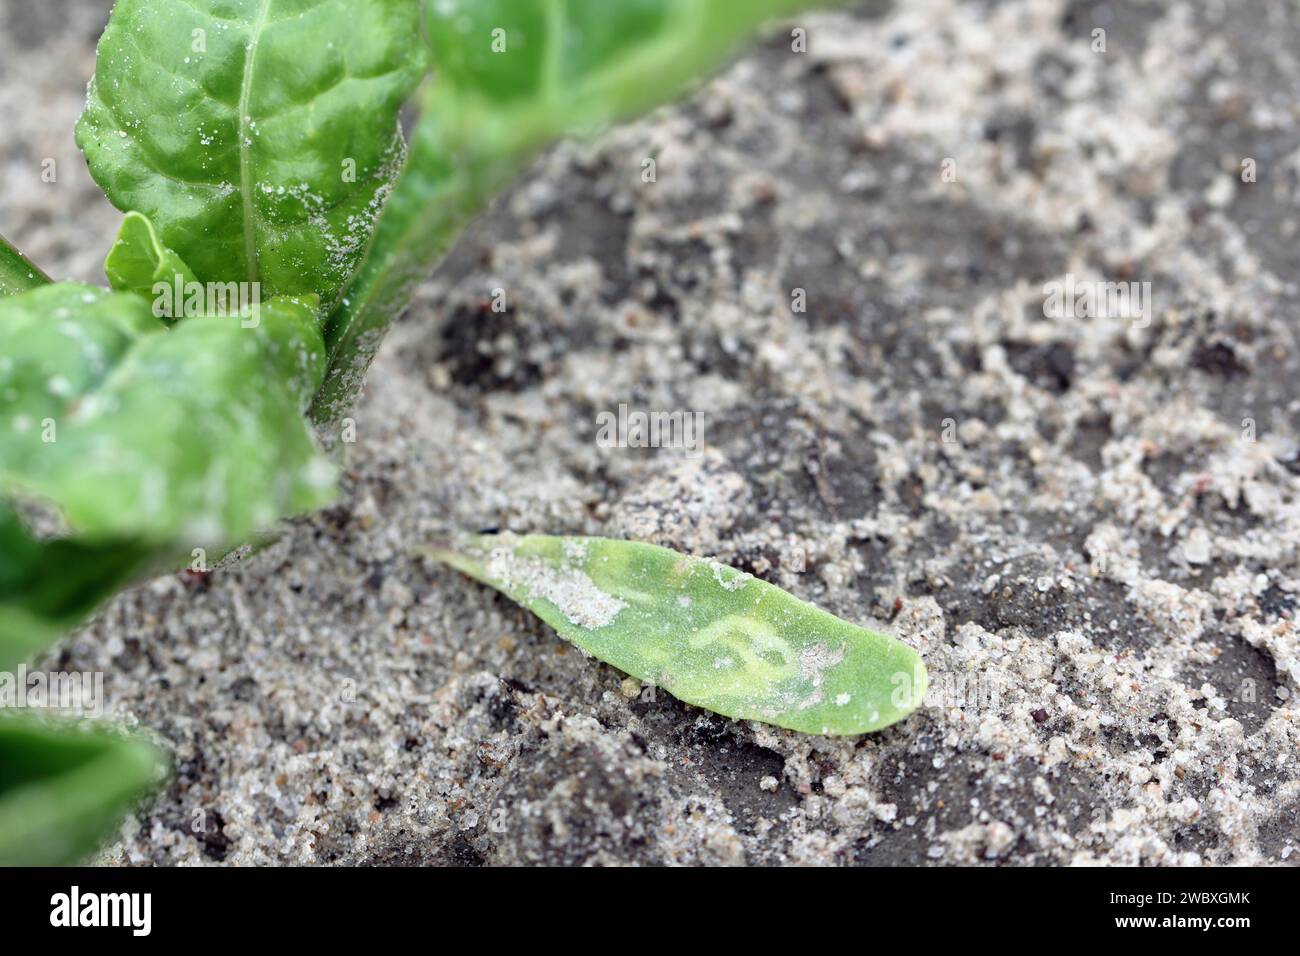 Cotyledon der Zuckerrübenpflanze mit Larventunneln von Larven fliegen aus der Familie Agromyzidae, Laub-Miner-Fliegen. Stockfoto